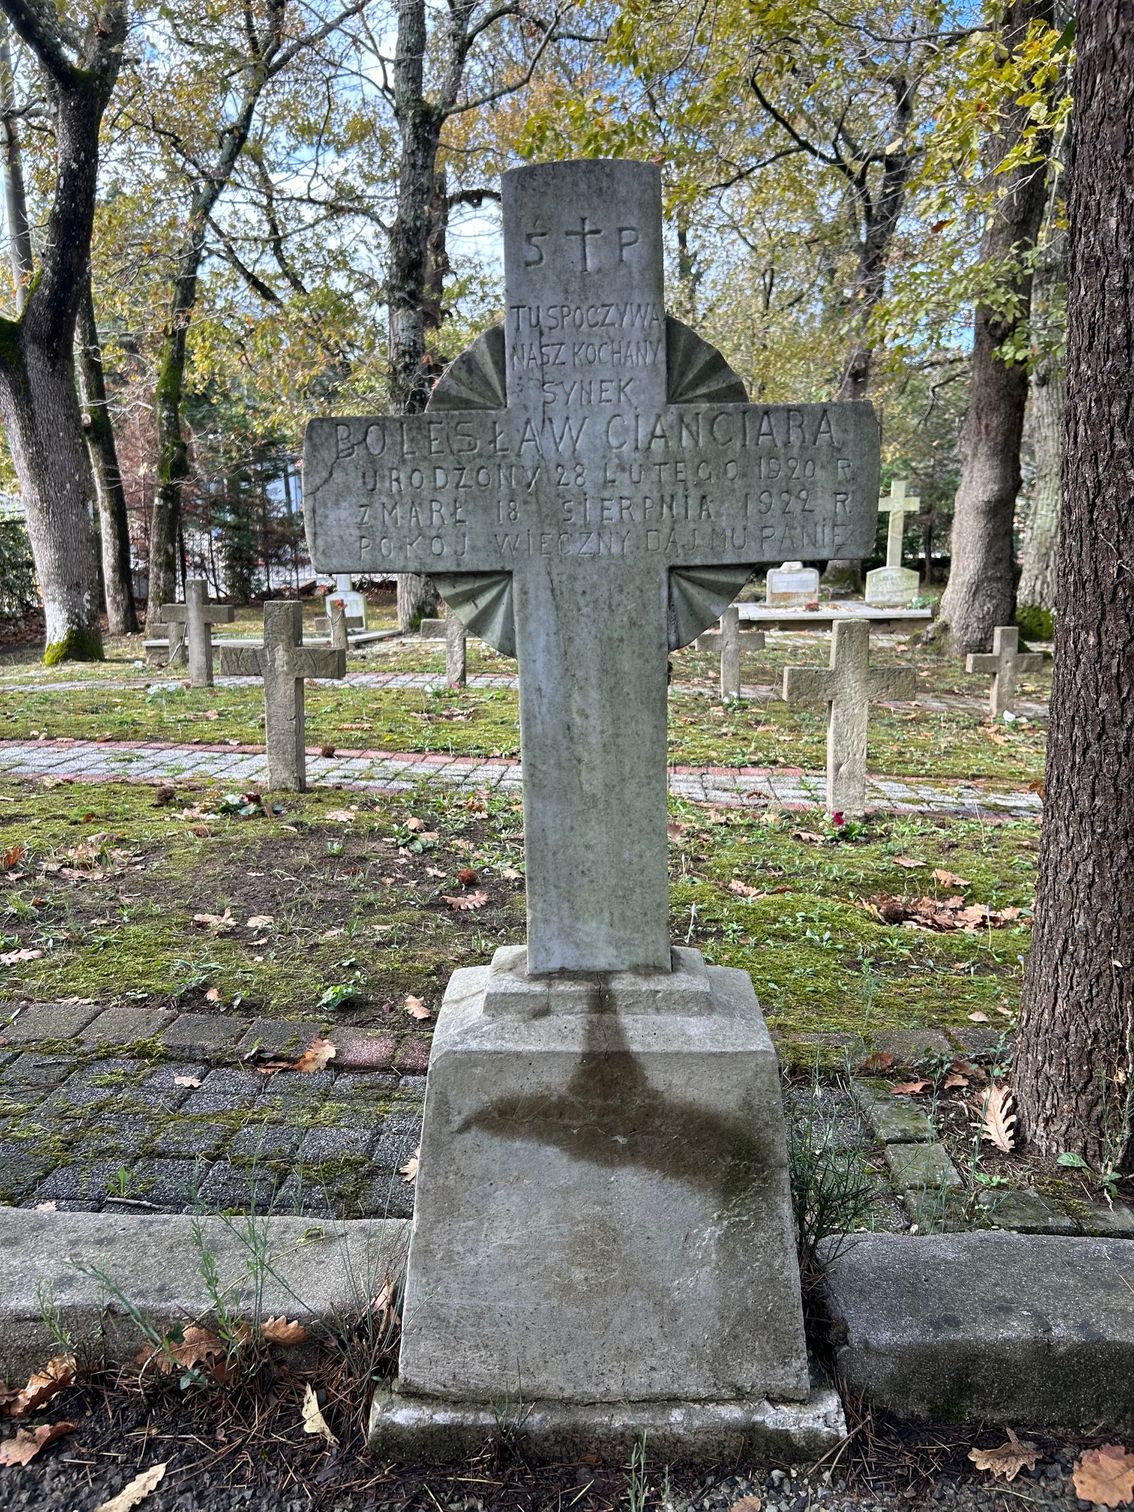 Tombstone of Bolesław Cianciara, Catholic cemetery in Adampol